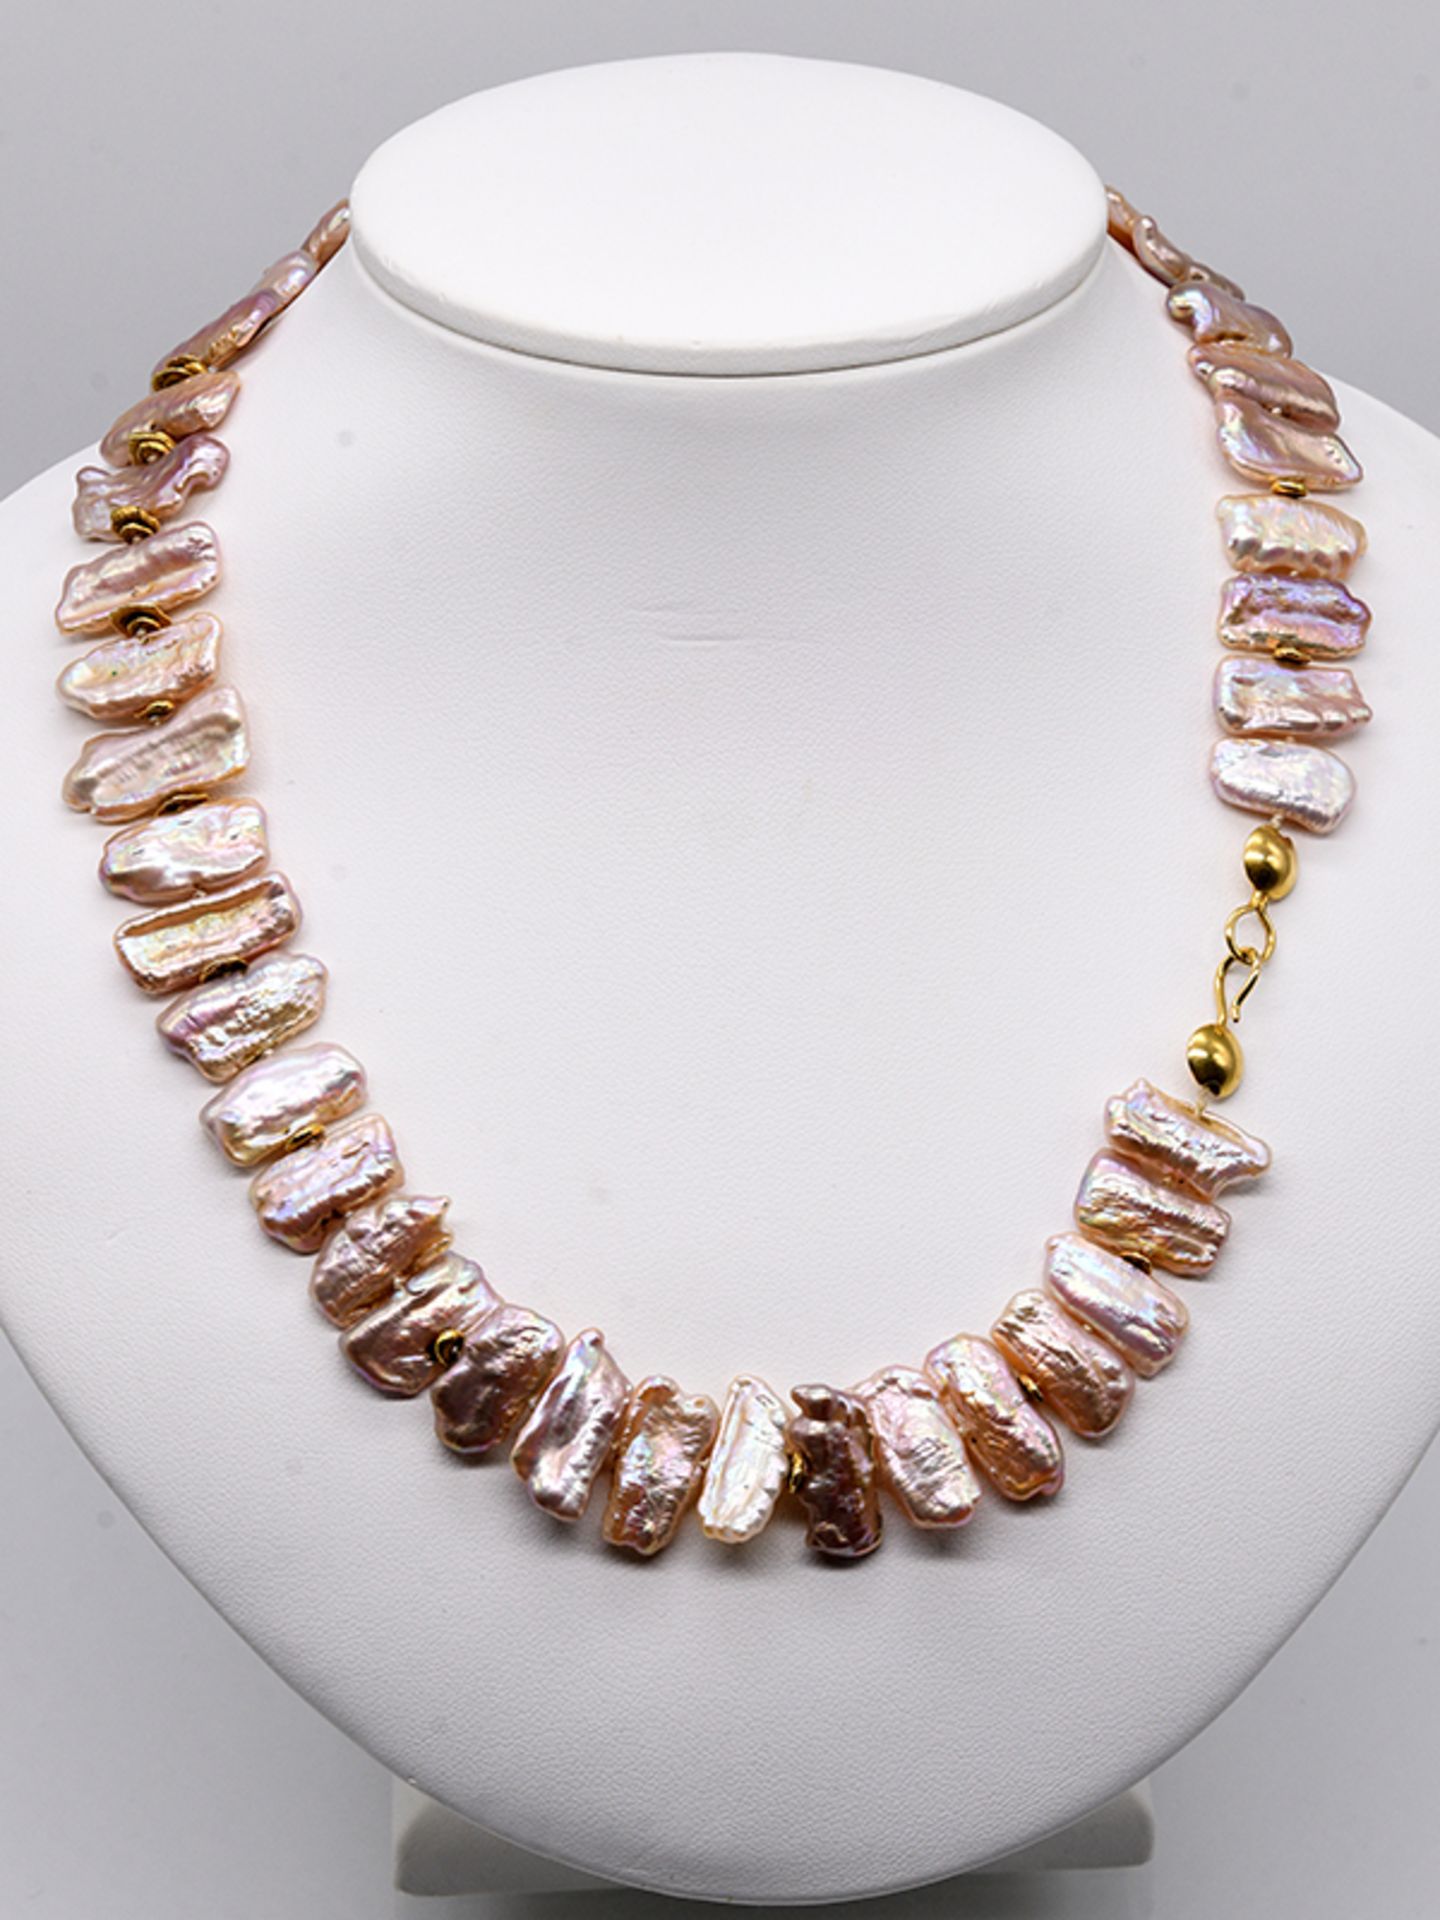 Collier aus Biwa-Perlen und goldenen Zwischengliedern, 21. Jh. 750/- Gelbgold-Verschluss- und